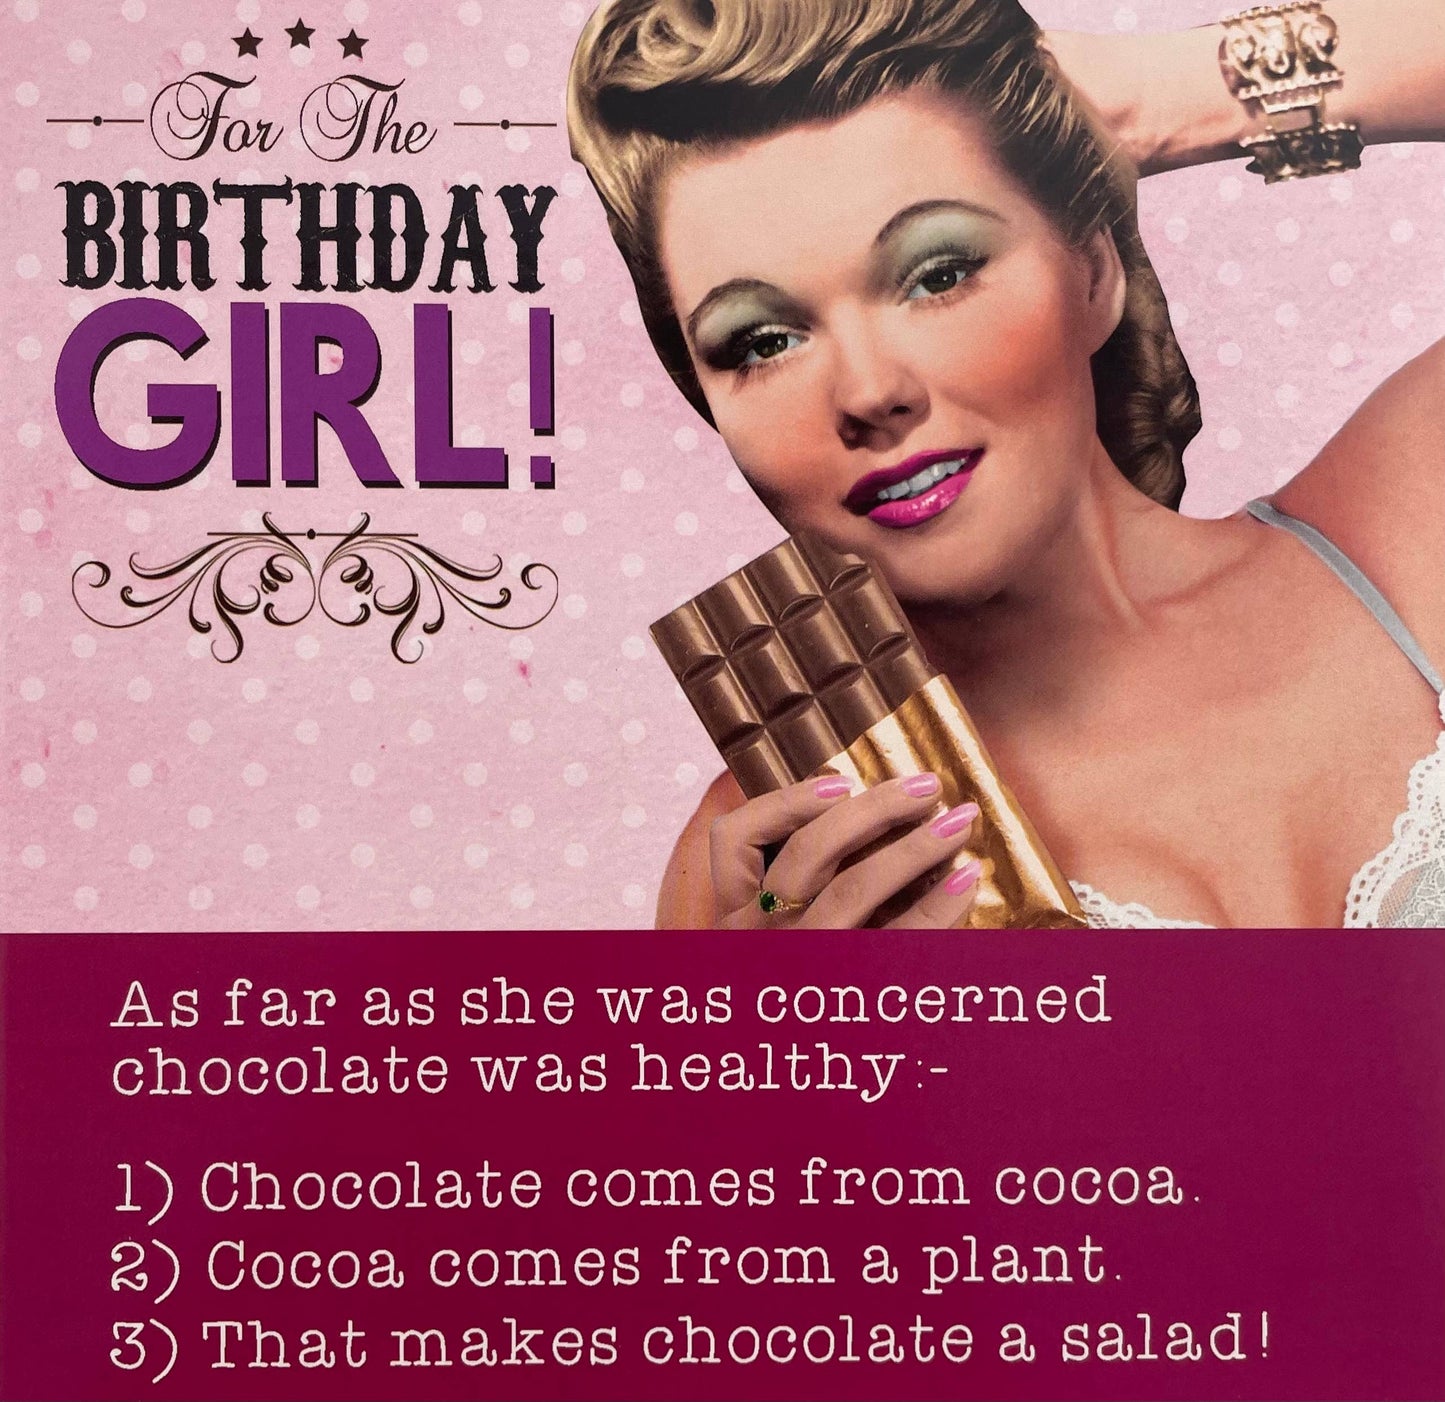 Birthday Girl! - Chocolate Salad Birthday Greeting Card